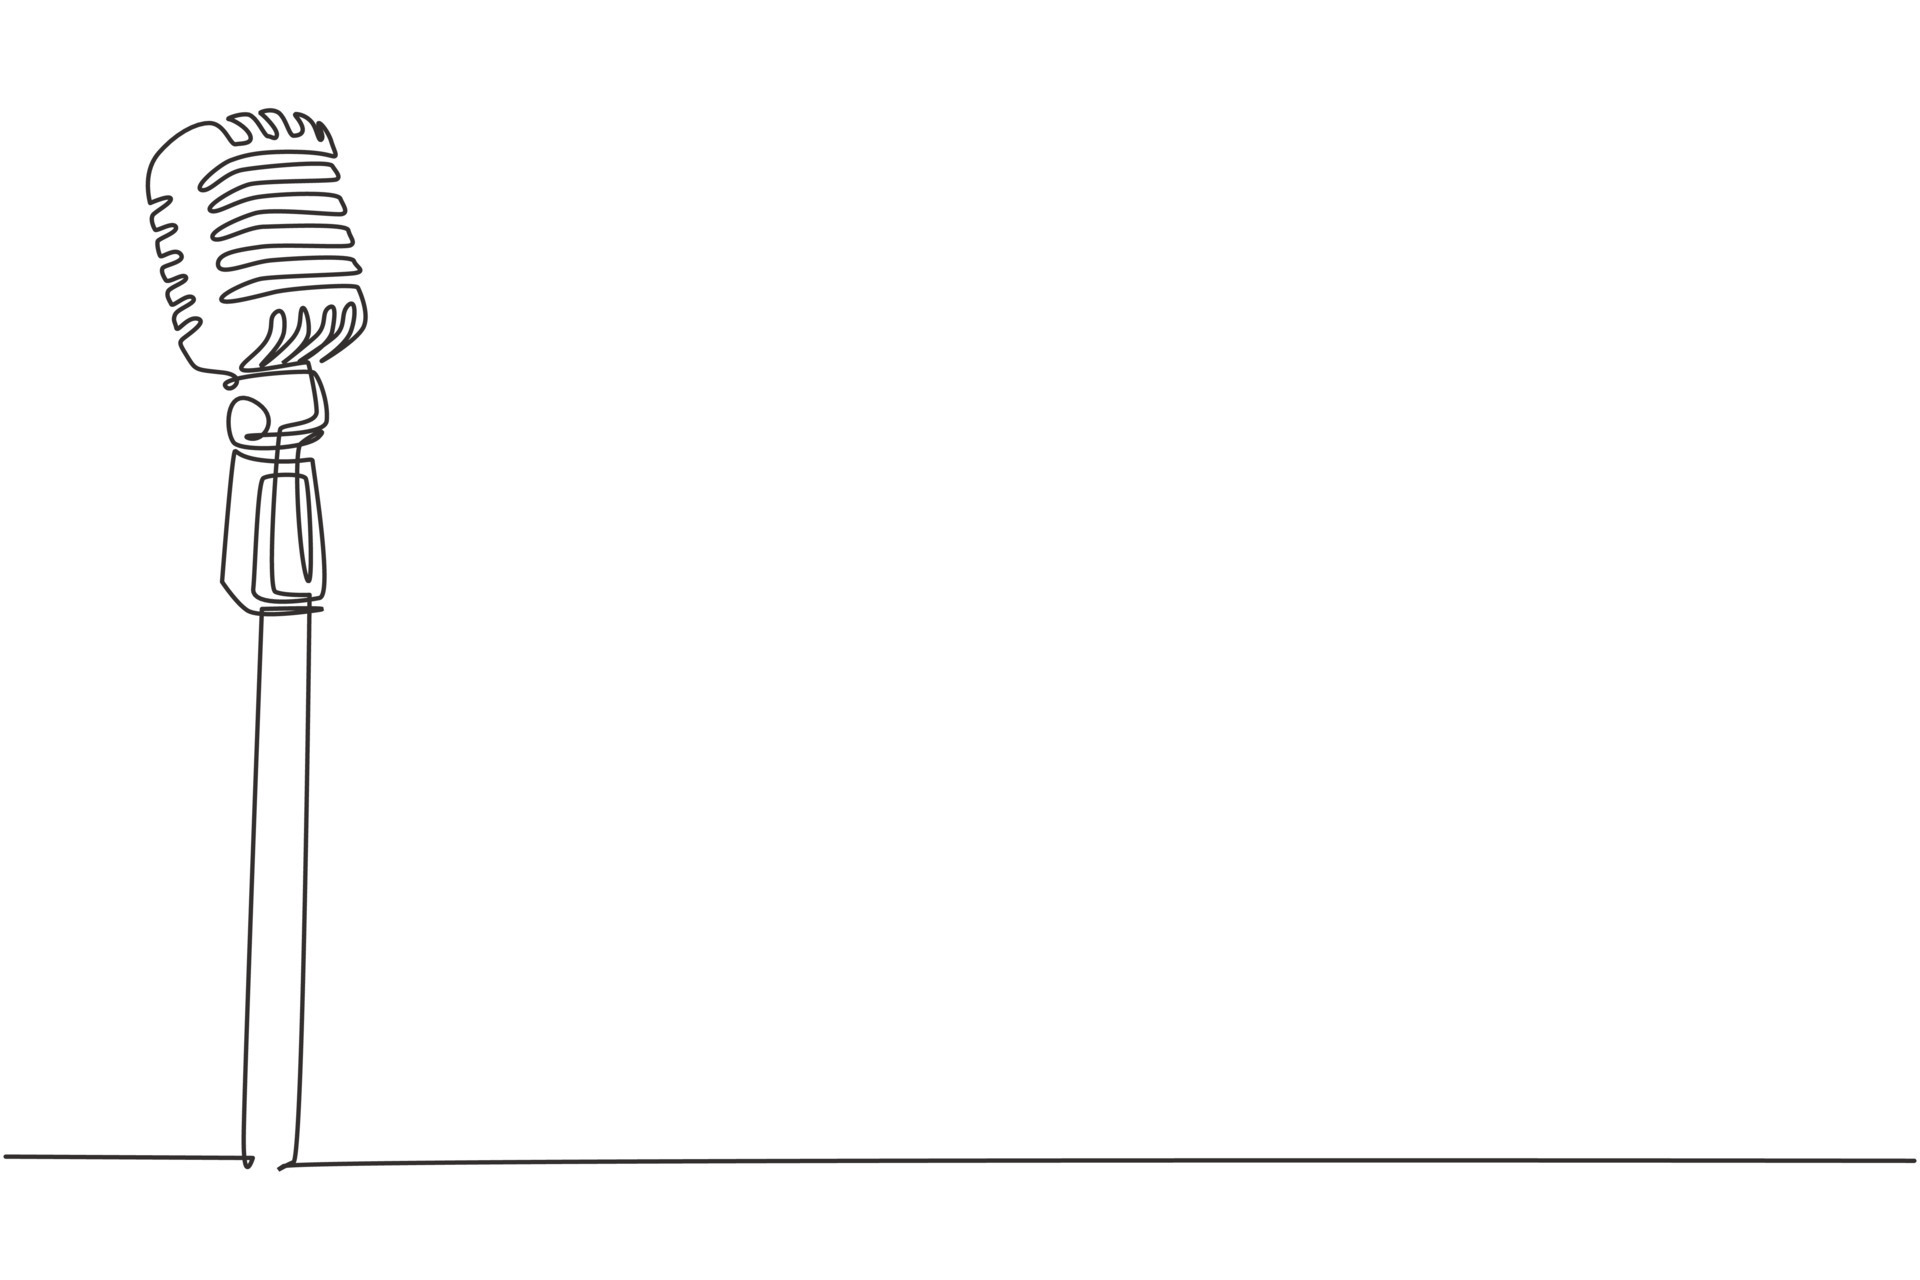 Delegeren Katholiek Hervat enkele een lijntekening vintage retro podium microfoon. oude technologie  stand microfoon concept voor komiek bij stand-up comedy show. moderne  doorlopende lijn tekenen ontwerp grafische vectorillustratie 8990818 -  Download Free Vectors, Vector Bestanden,